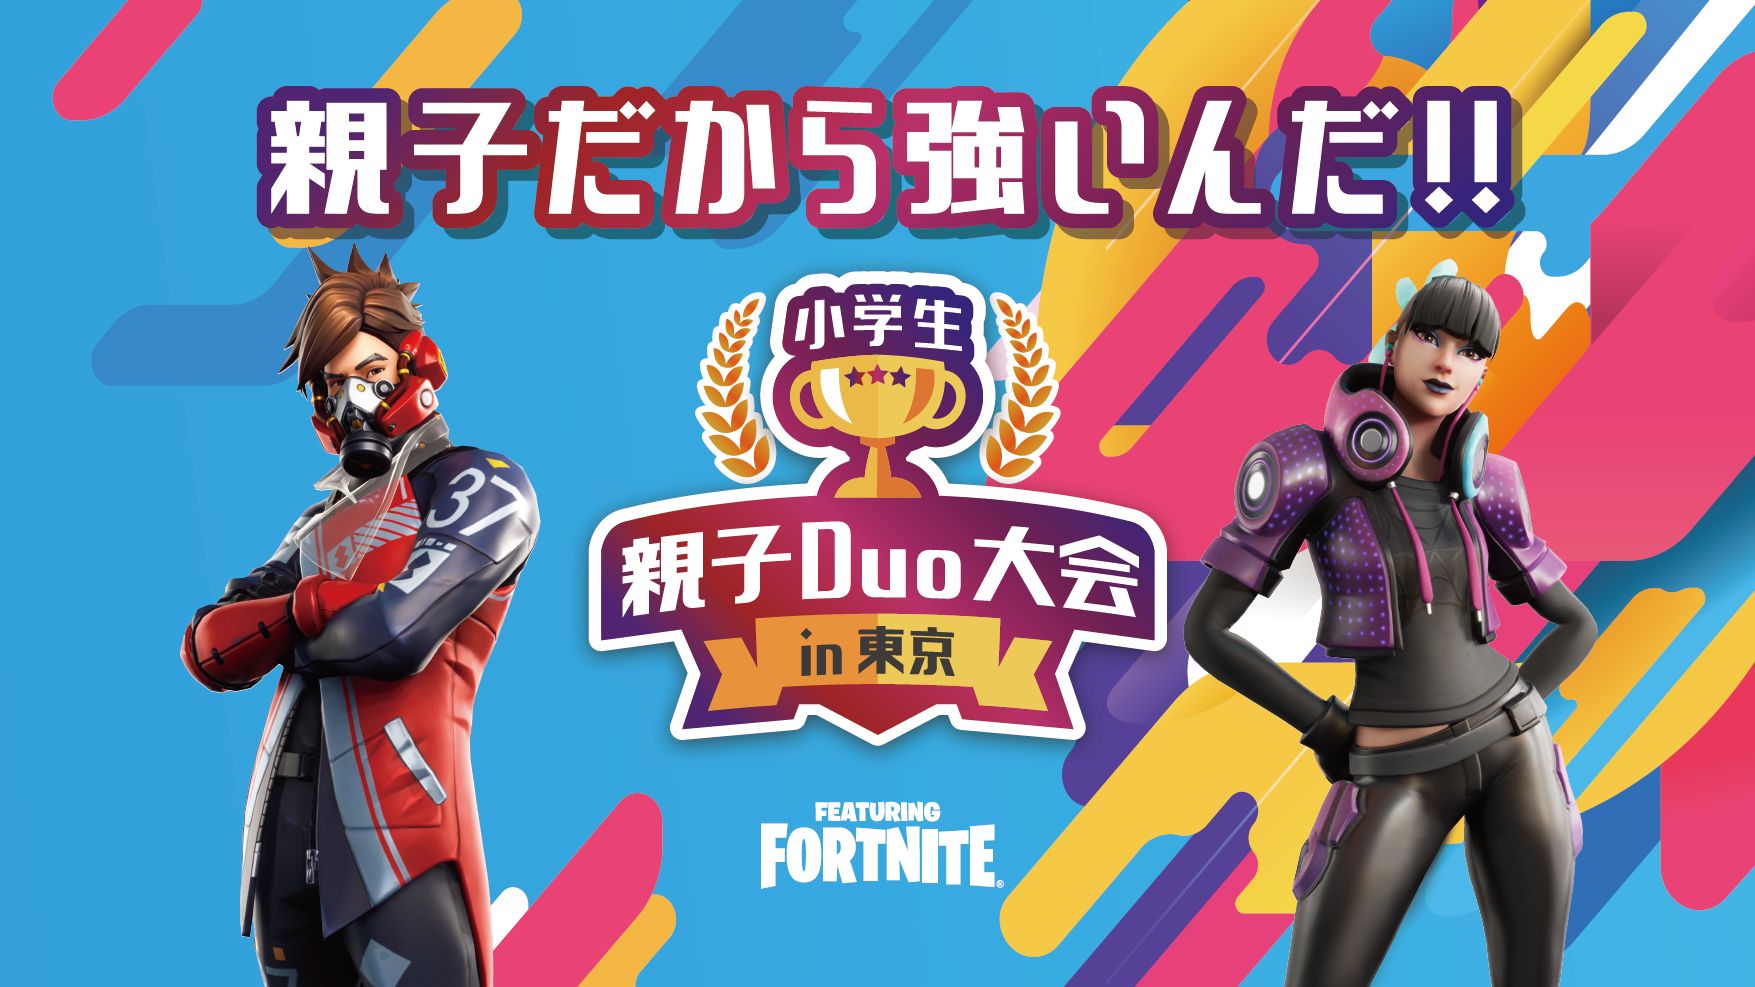 フォートナイト の小学生親子duo大会が東京メトロ主催で夏休みに開催 Game Watch